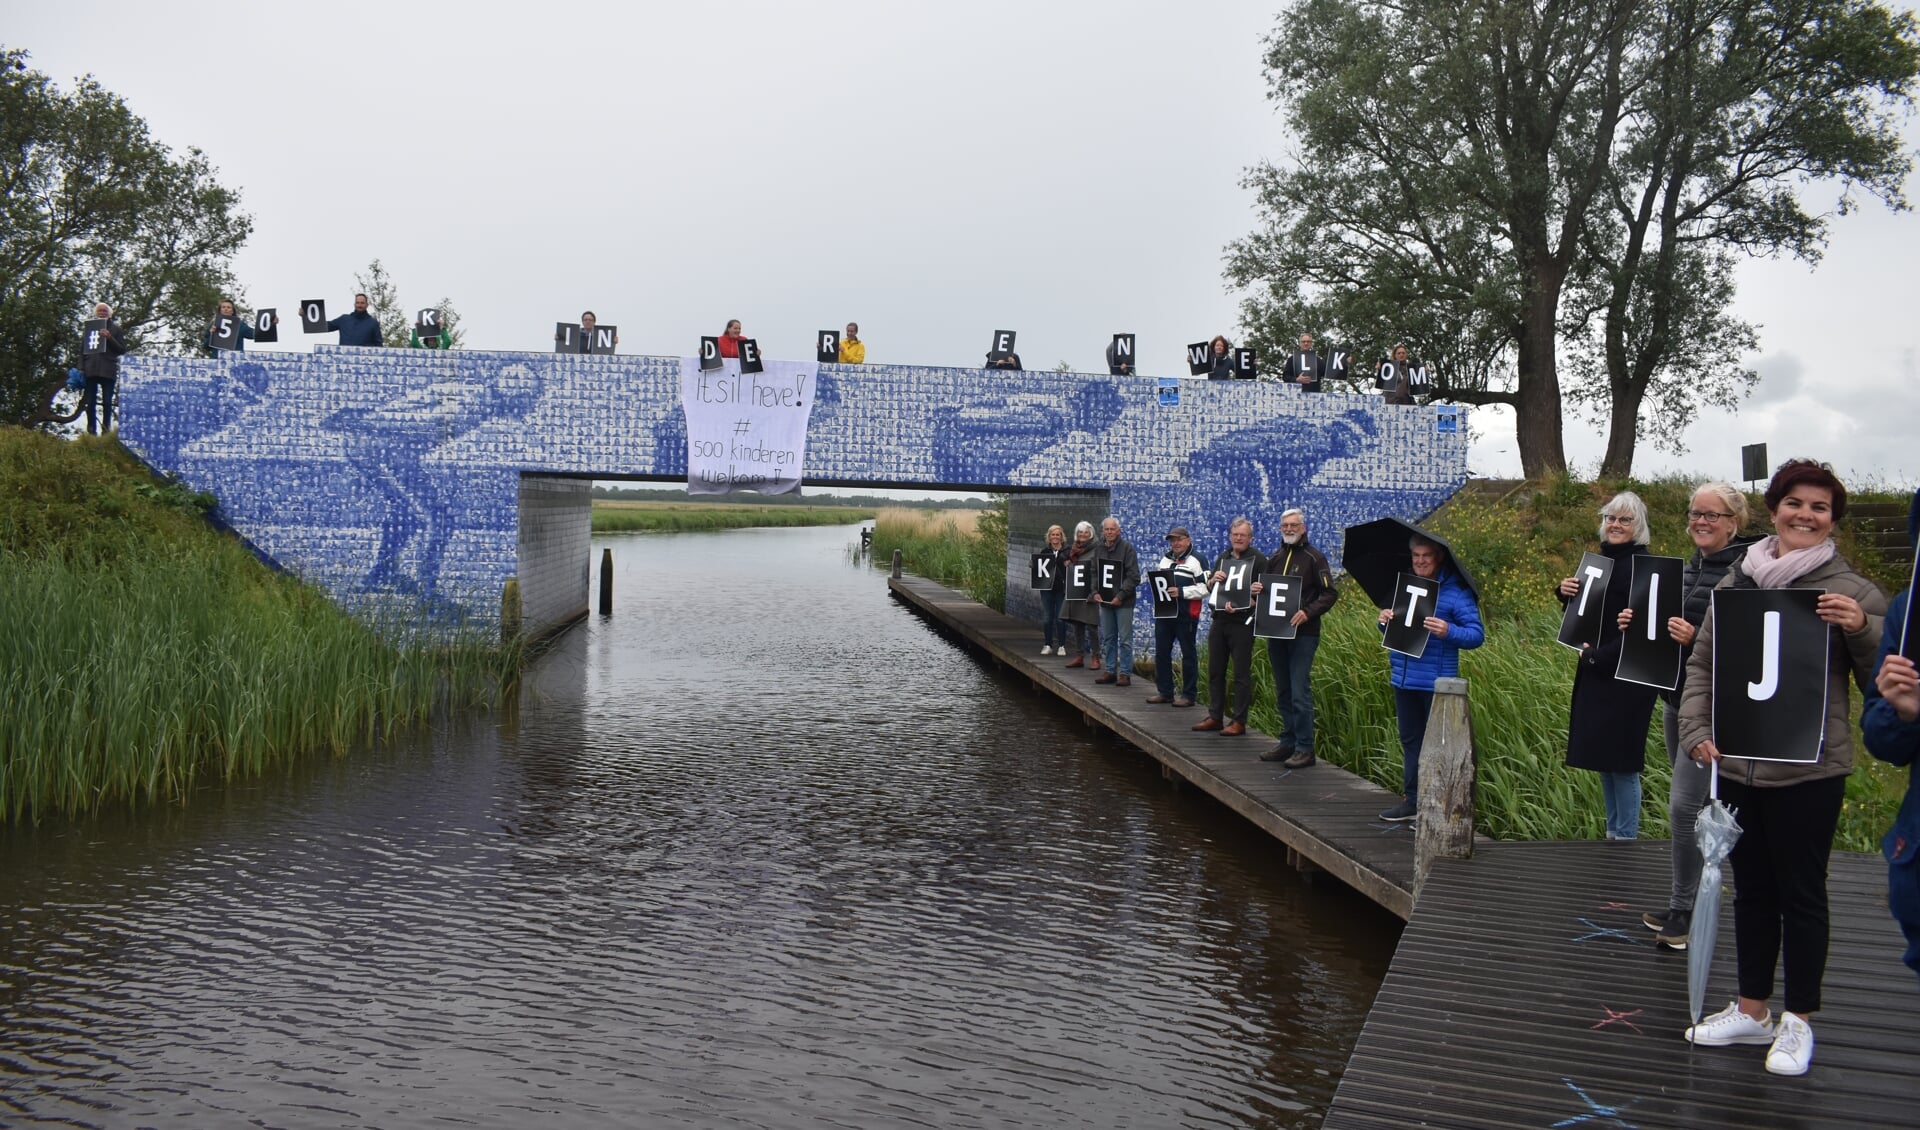 '# 500 kinderen welkom' en 'Keer het tij!' waren de leuzen donderdag op en bij het Elfstedenbruggetje bij Gytsjerk.